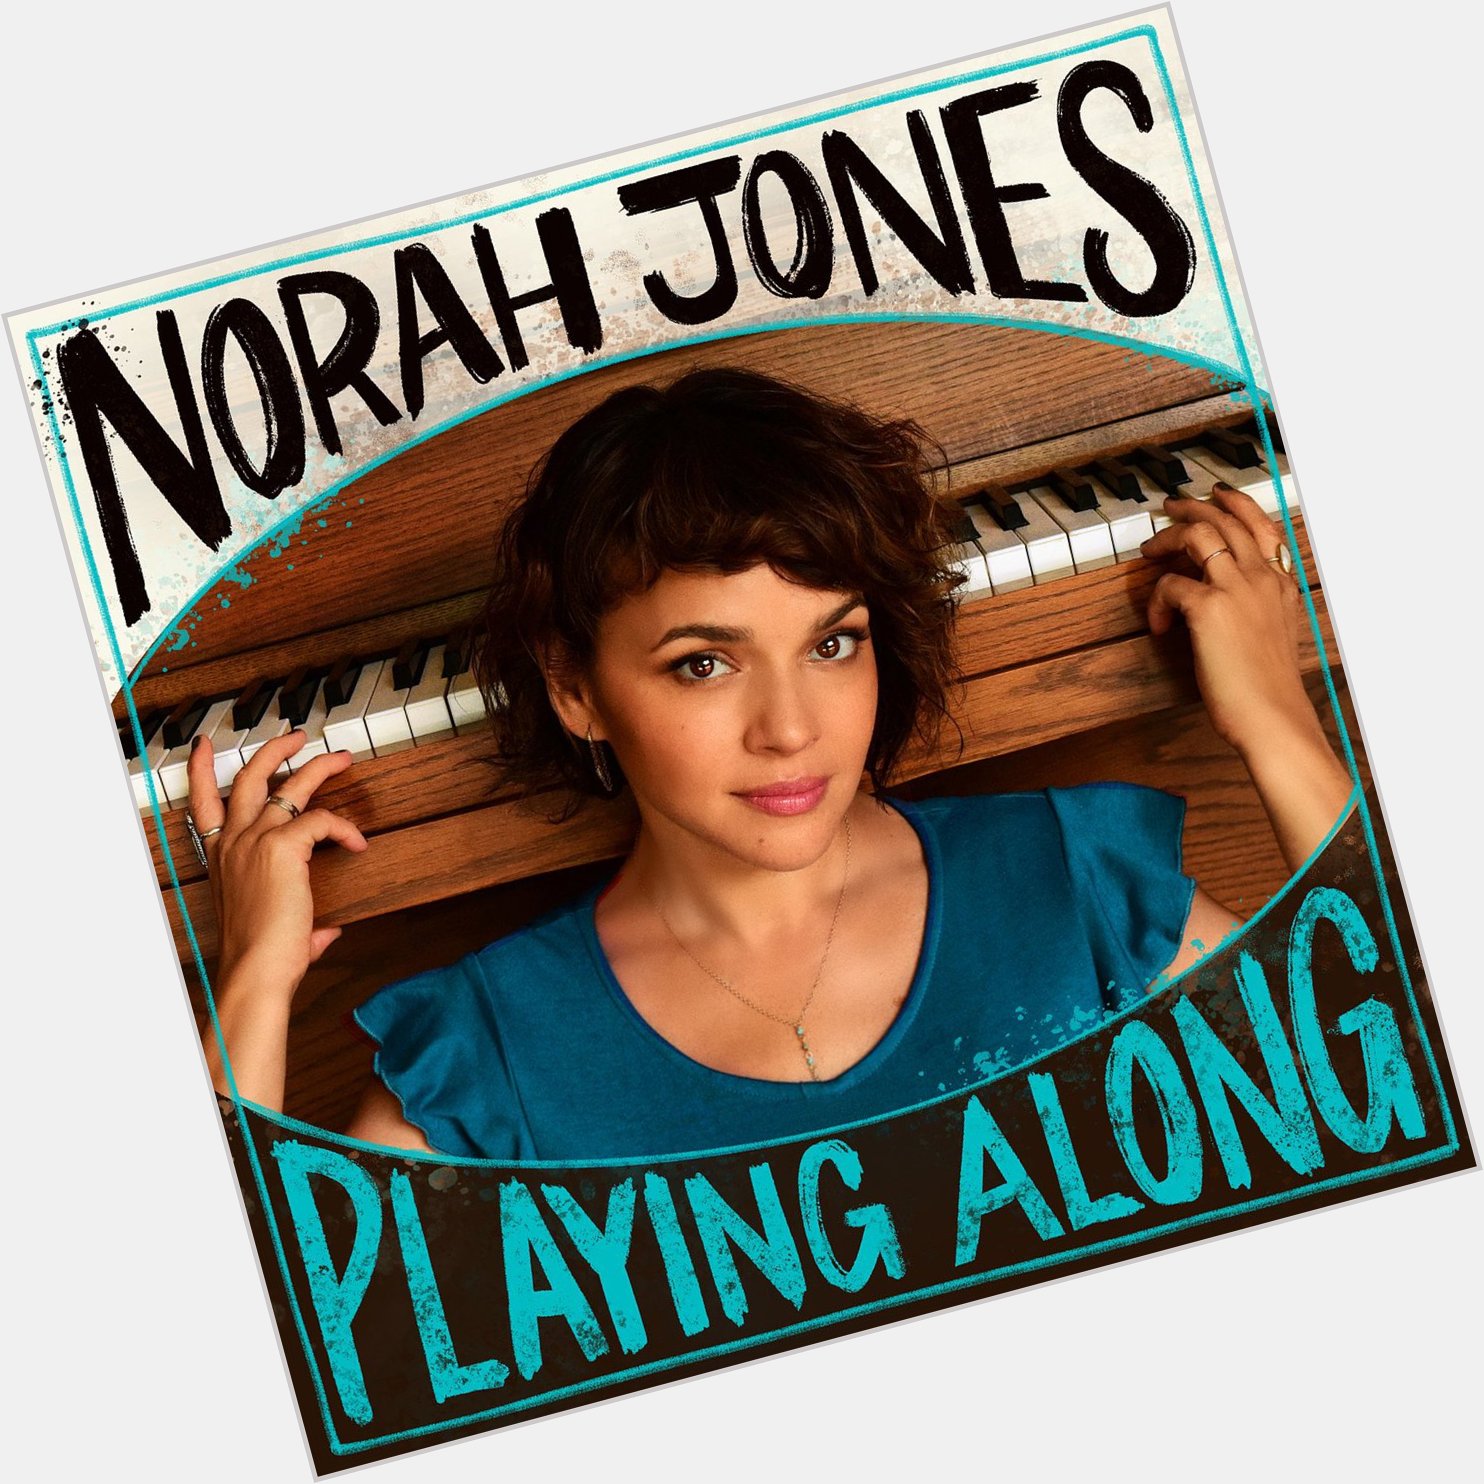 Happy Birthday to Norah Jones! 